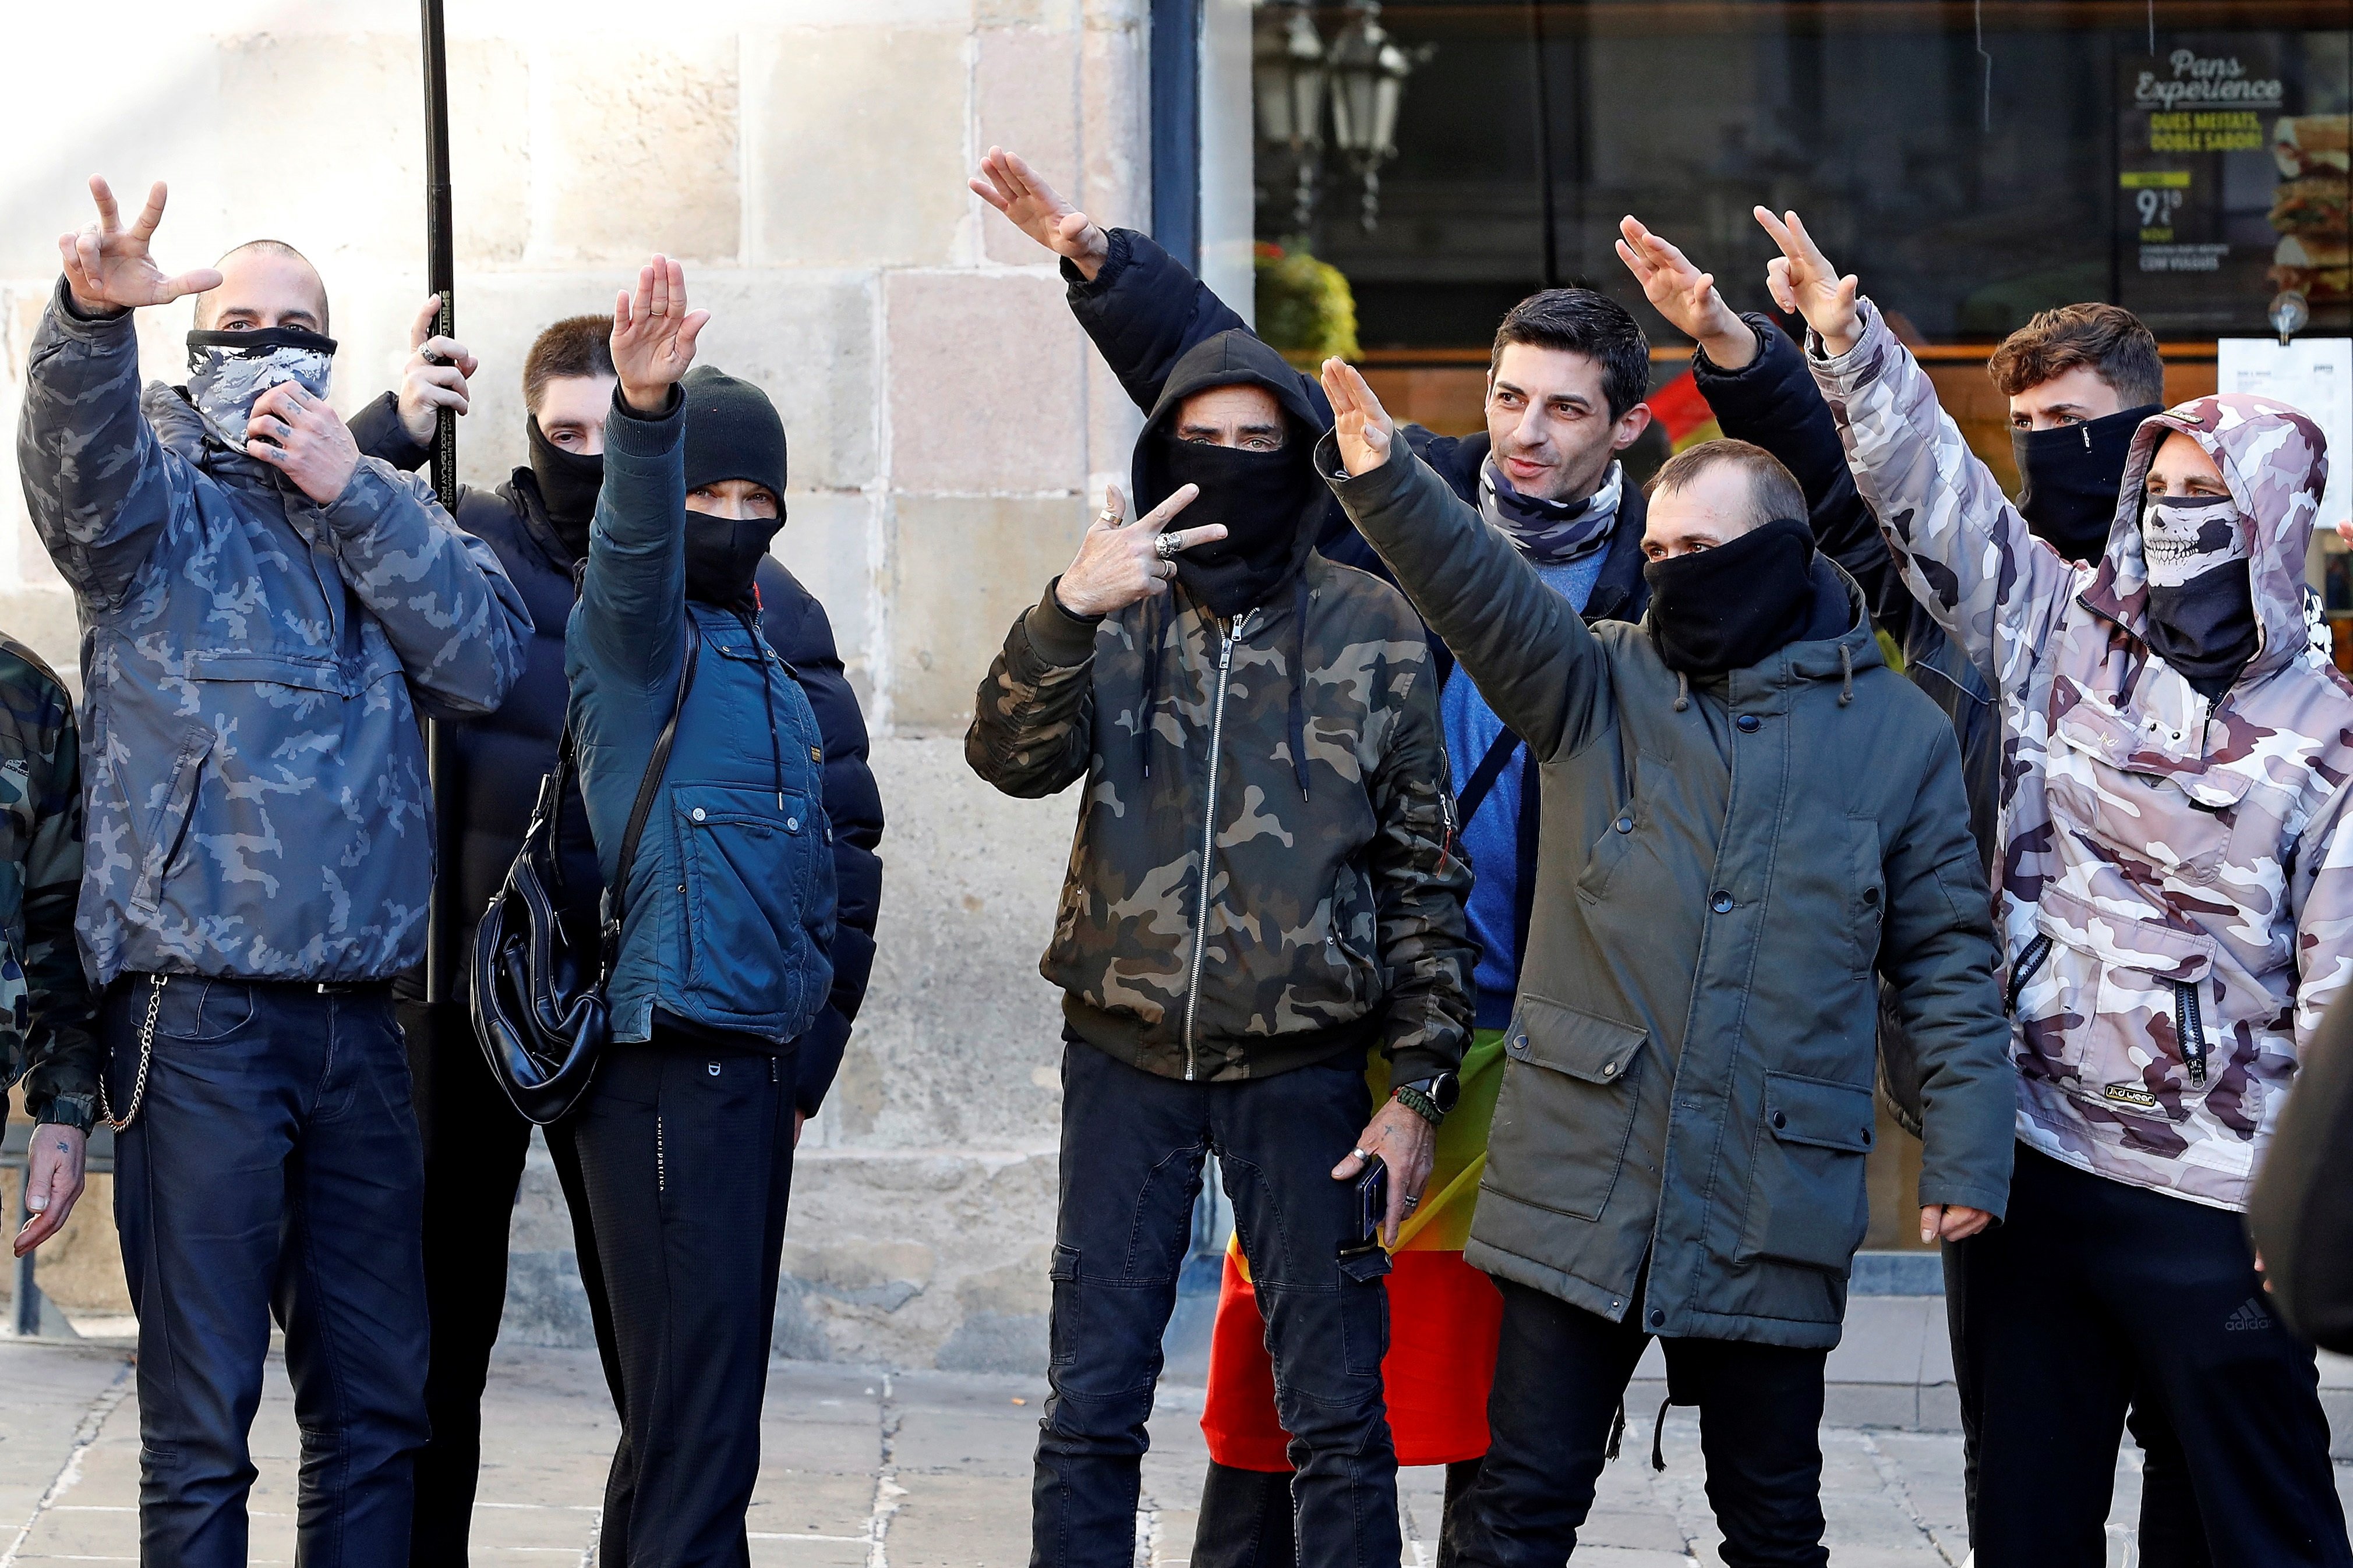 Barcelona denuncia la exhibición de símbolos nazis en el acto de Vox